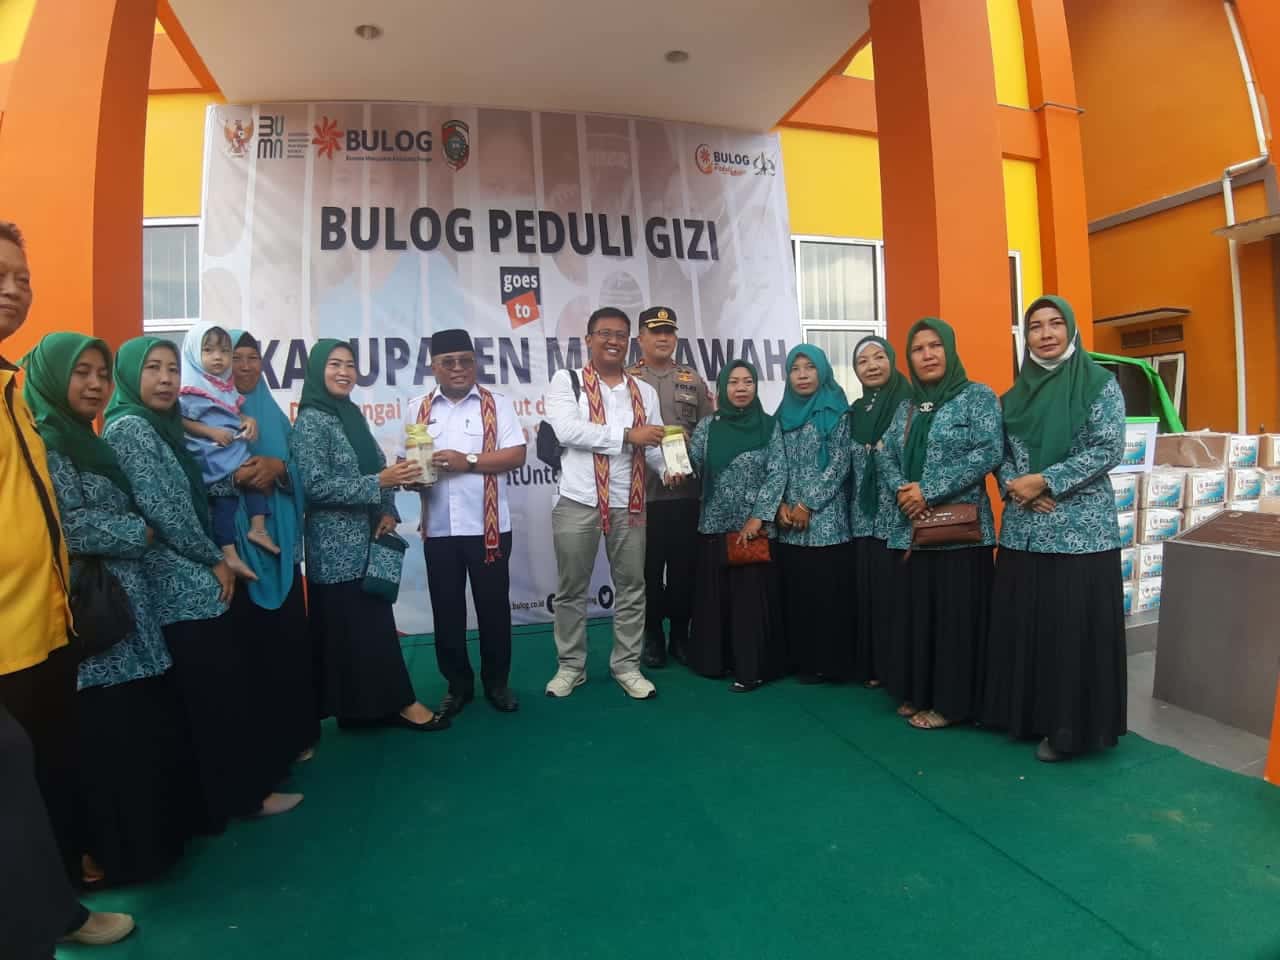 Acara Bulog Peduli Gizi di Kabupaten Mempawah, Kalimantan Barat, Rabu (28/09/2022). (Foto: Jau/KalbarOnline.com)